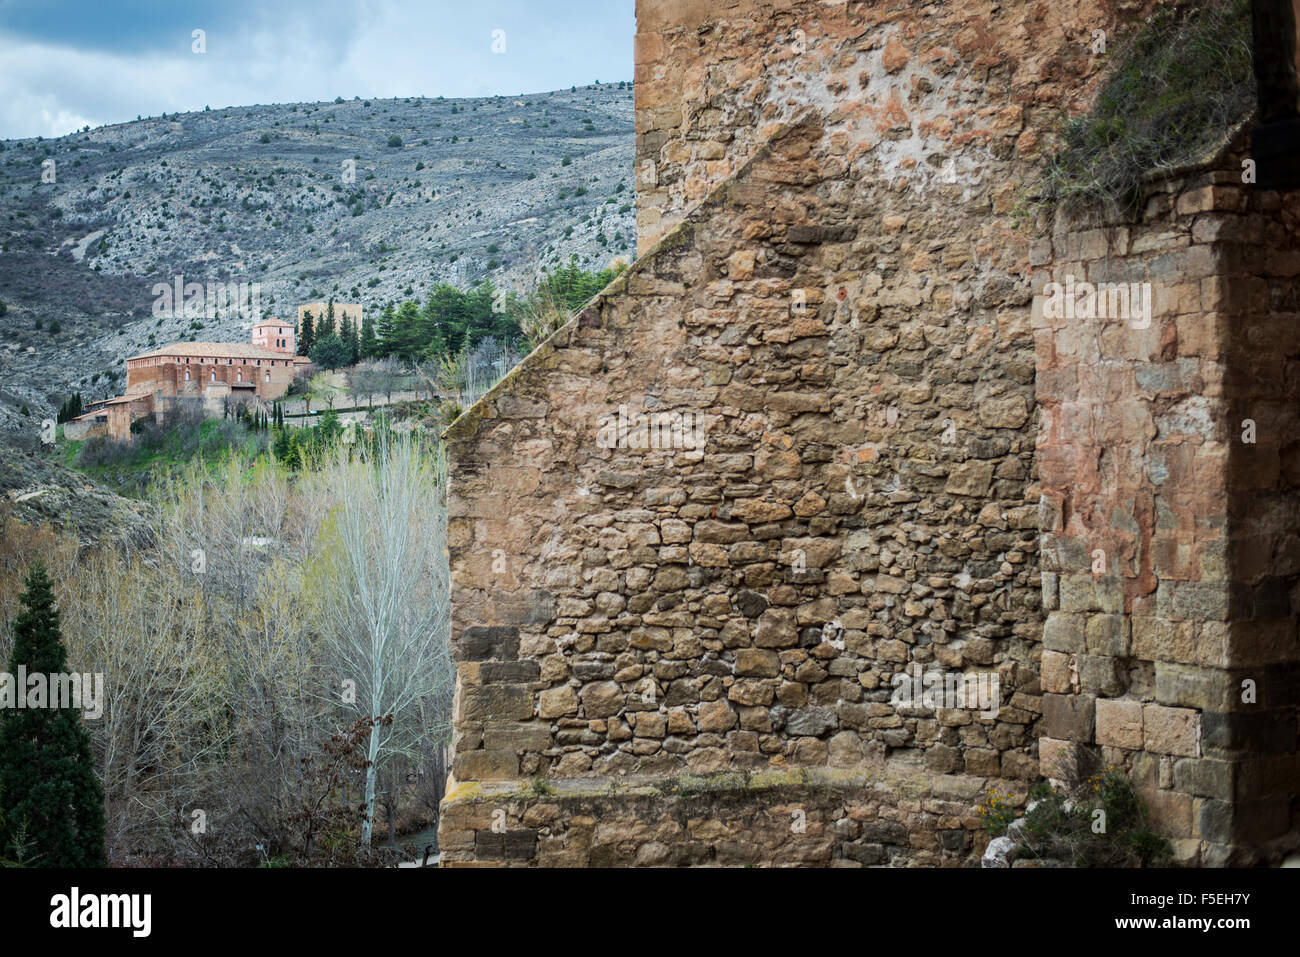 Route du patrimoine du village de Albarracin et médiévale de style mudéjar. Teruel, Aragon, Espagne Banque D'Images